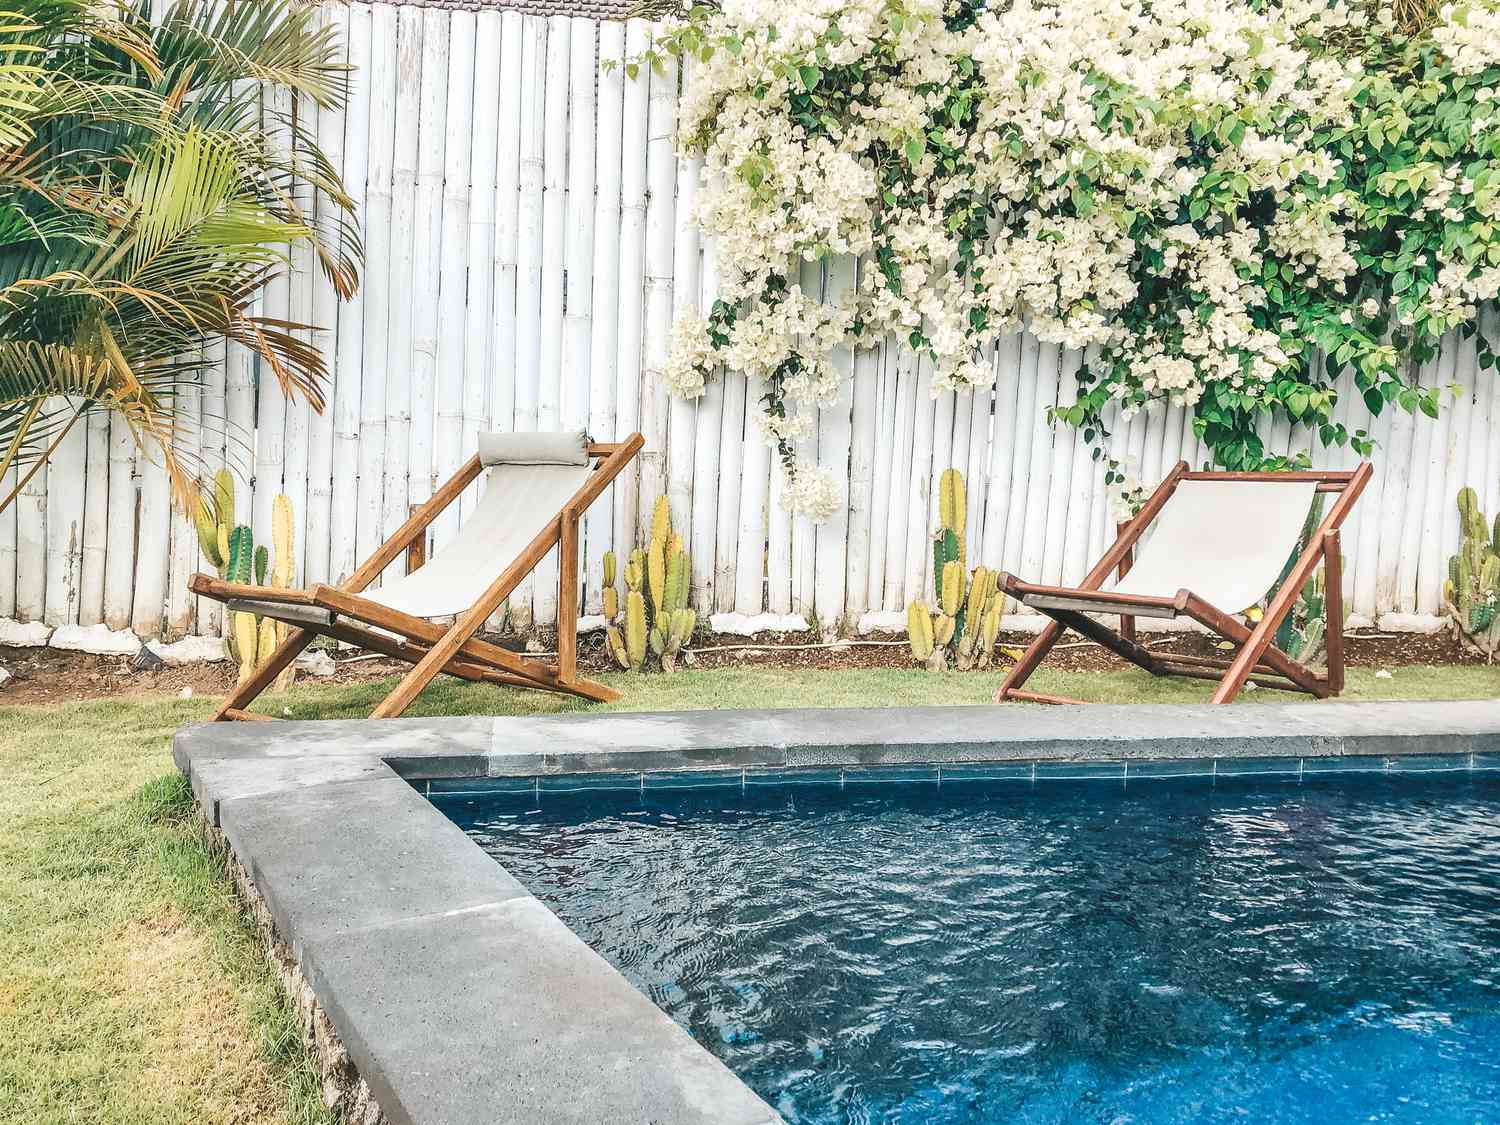 Uma piscina no quintal cercada por uma cerca de bambu branco e espreguiçadeiras.